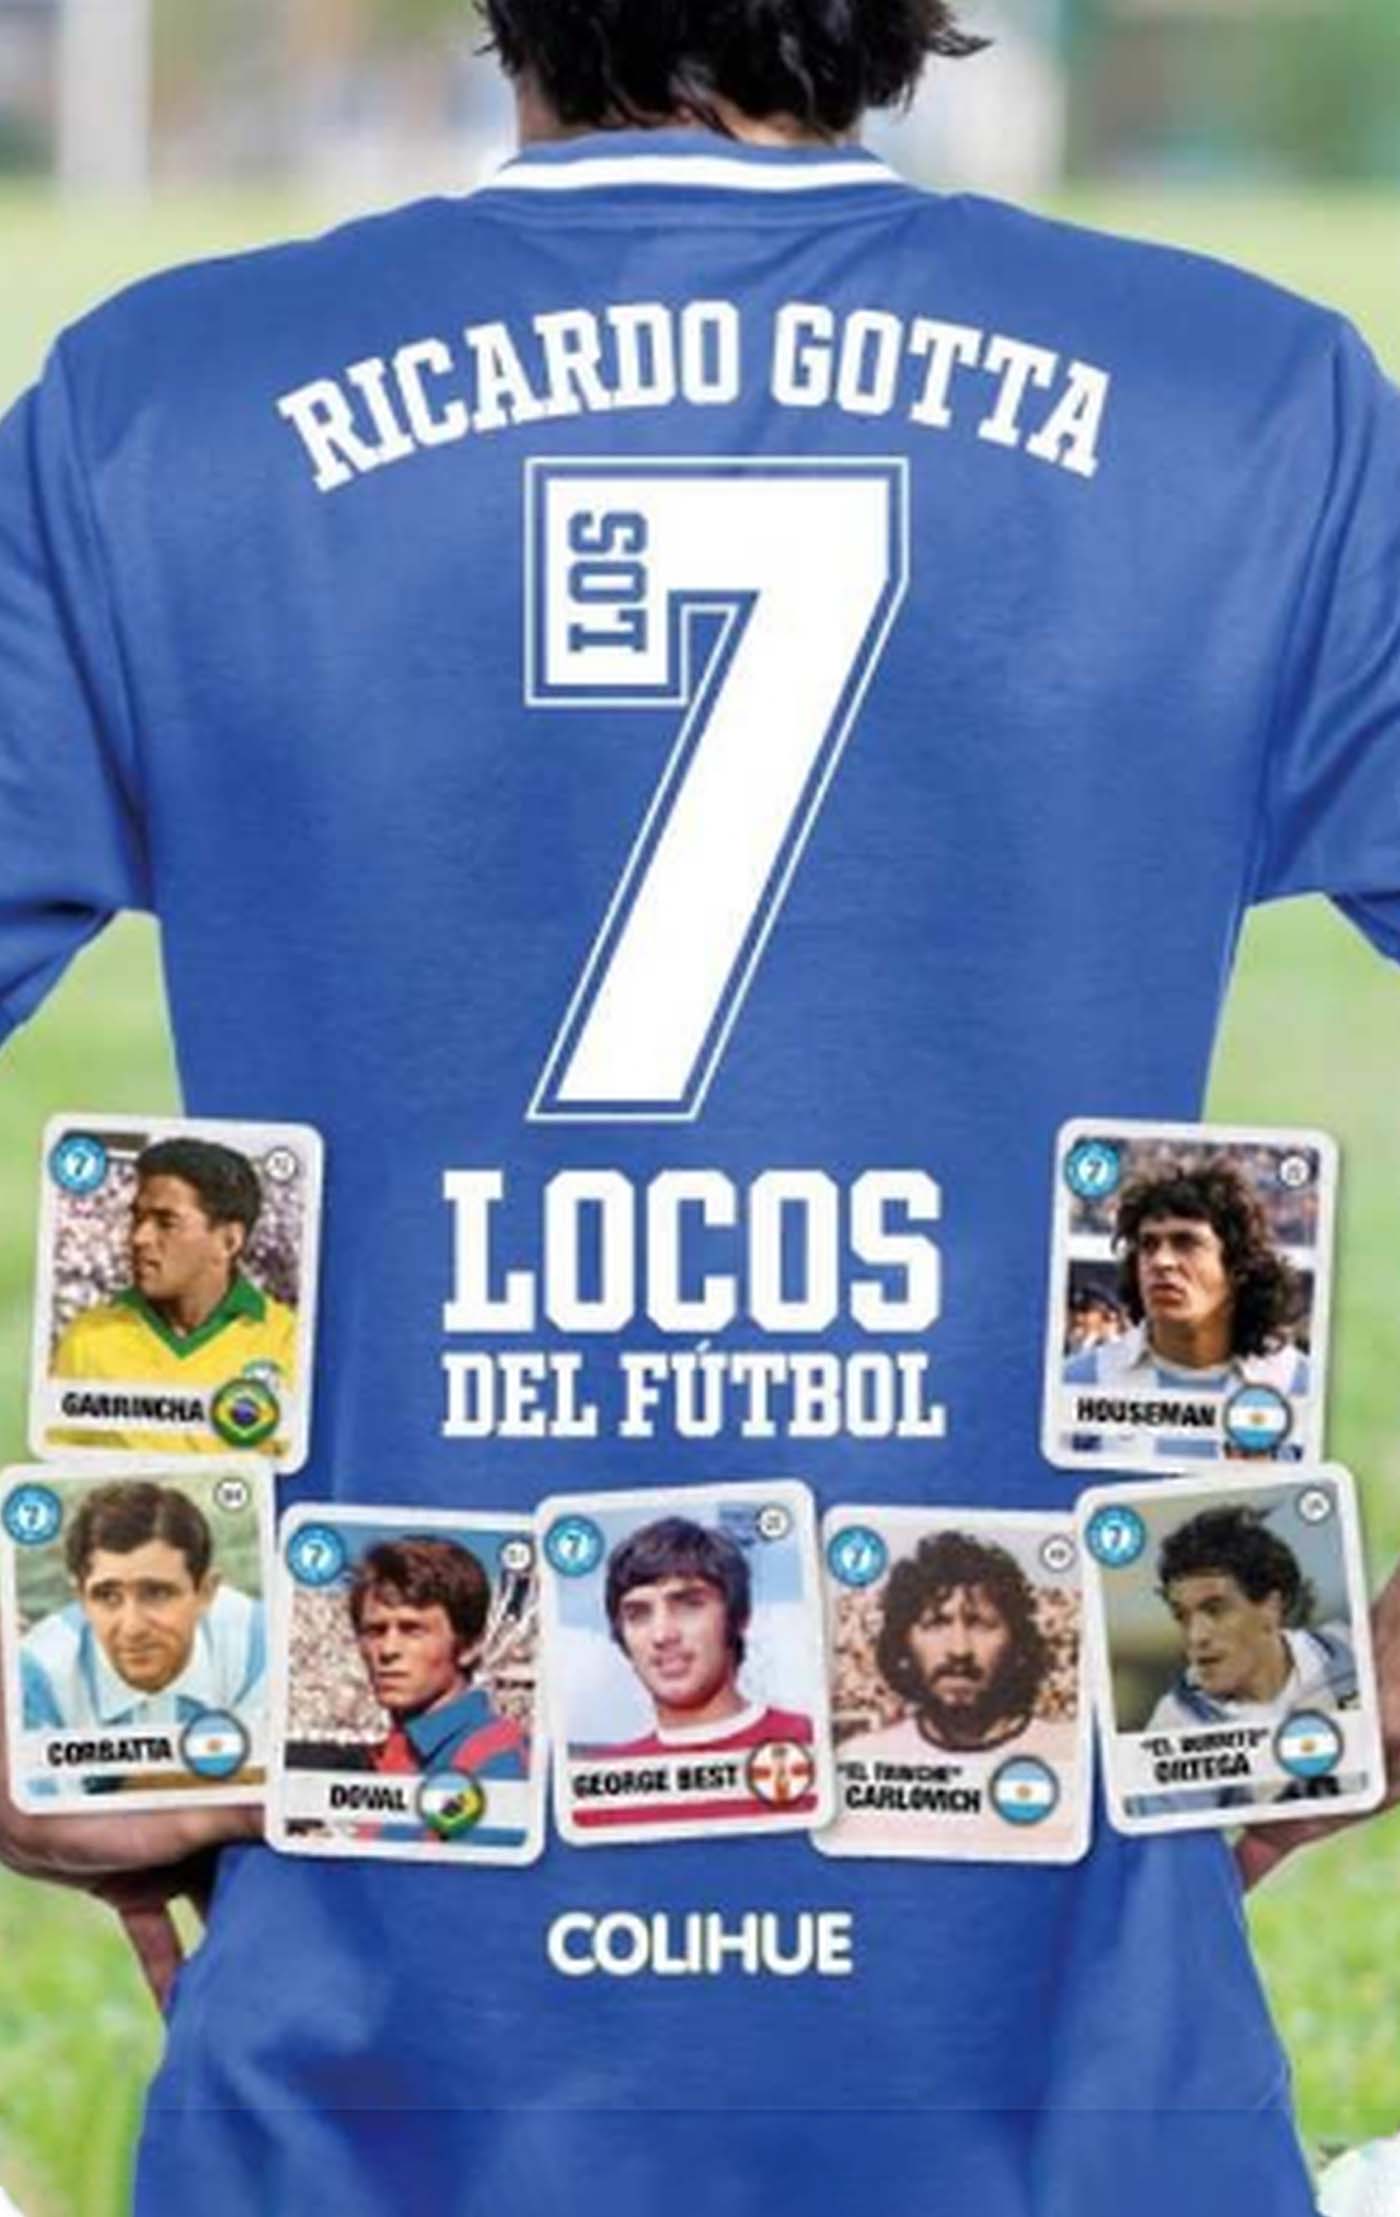 Los 7 locos del fútbol Ricardo Gotta